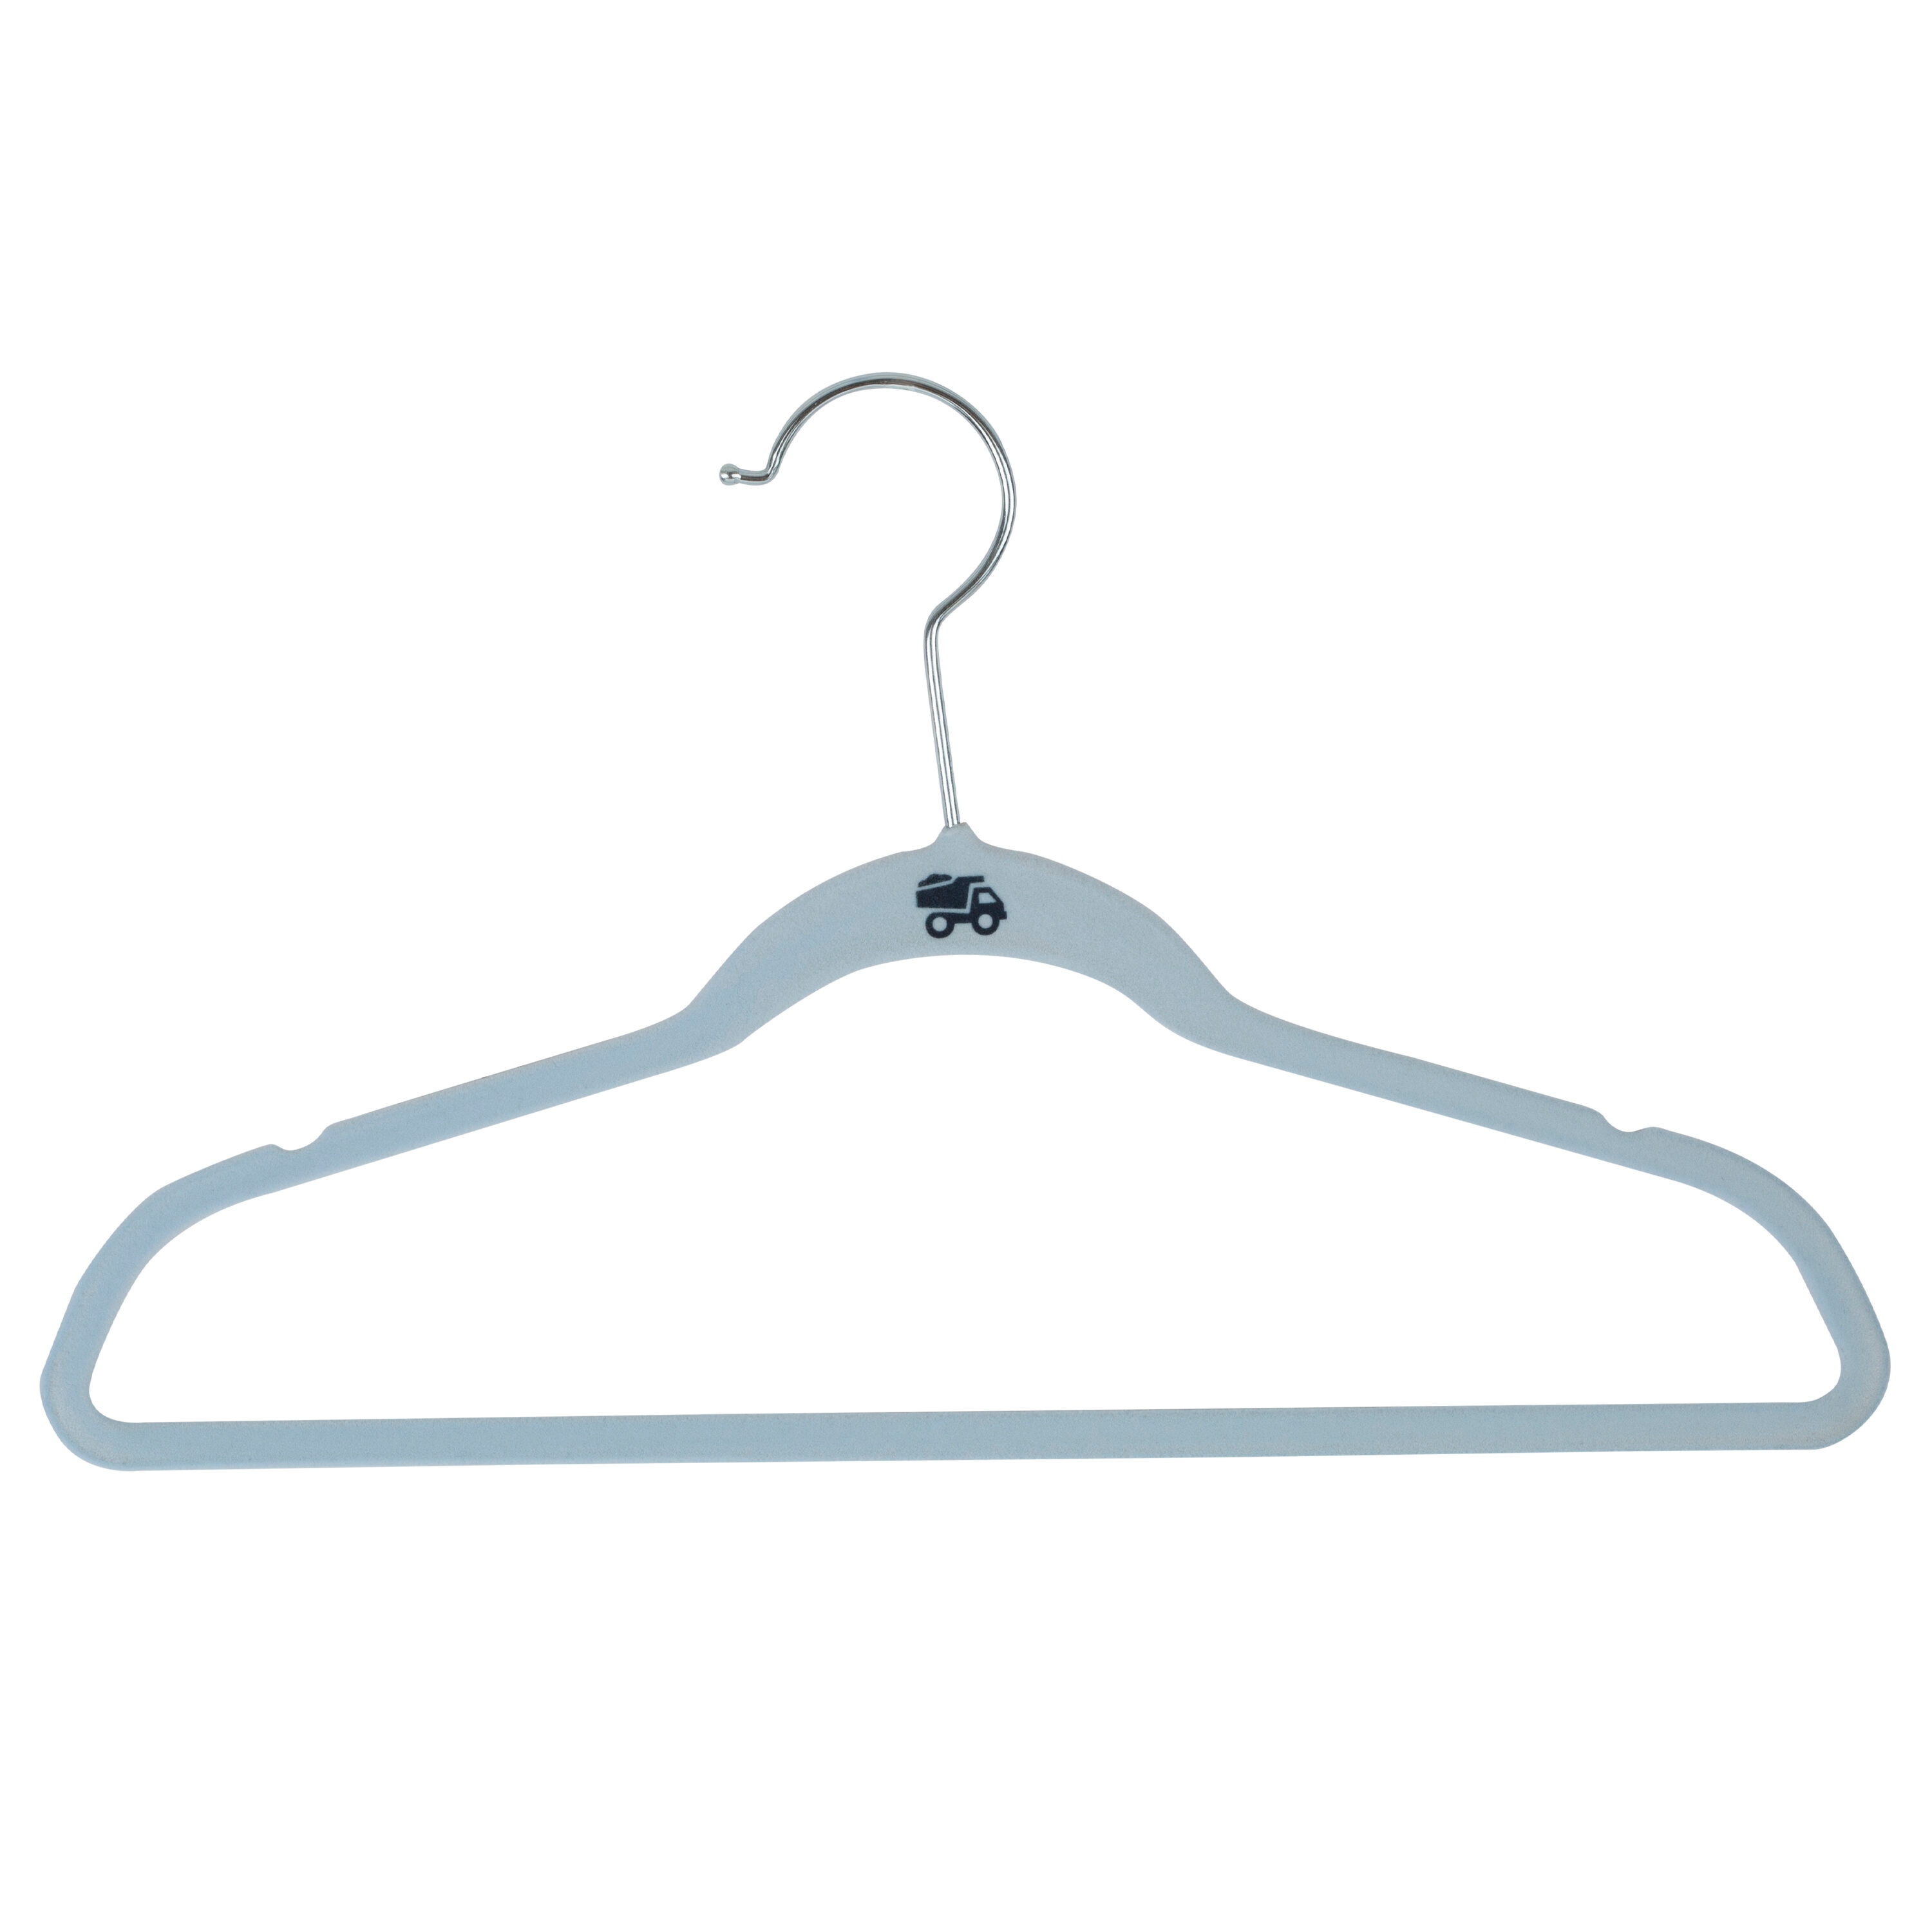 Merrick Plastic Clothing Hanger, 100 Pack, Artic White 